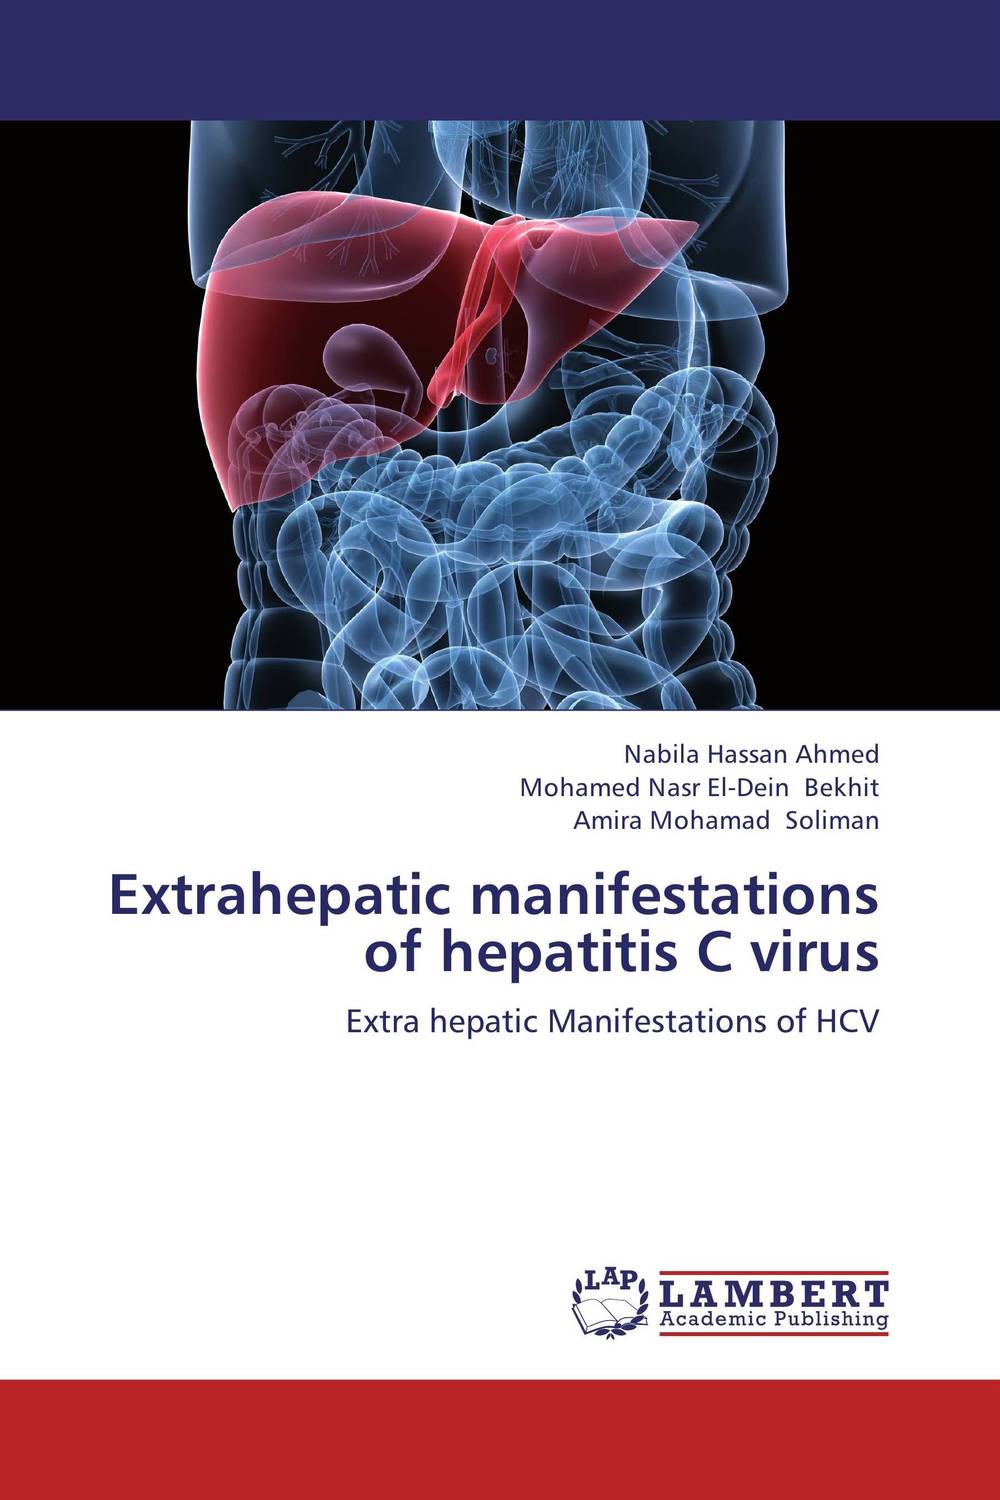 Extrahepatic manifestations of hepatitis C virus